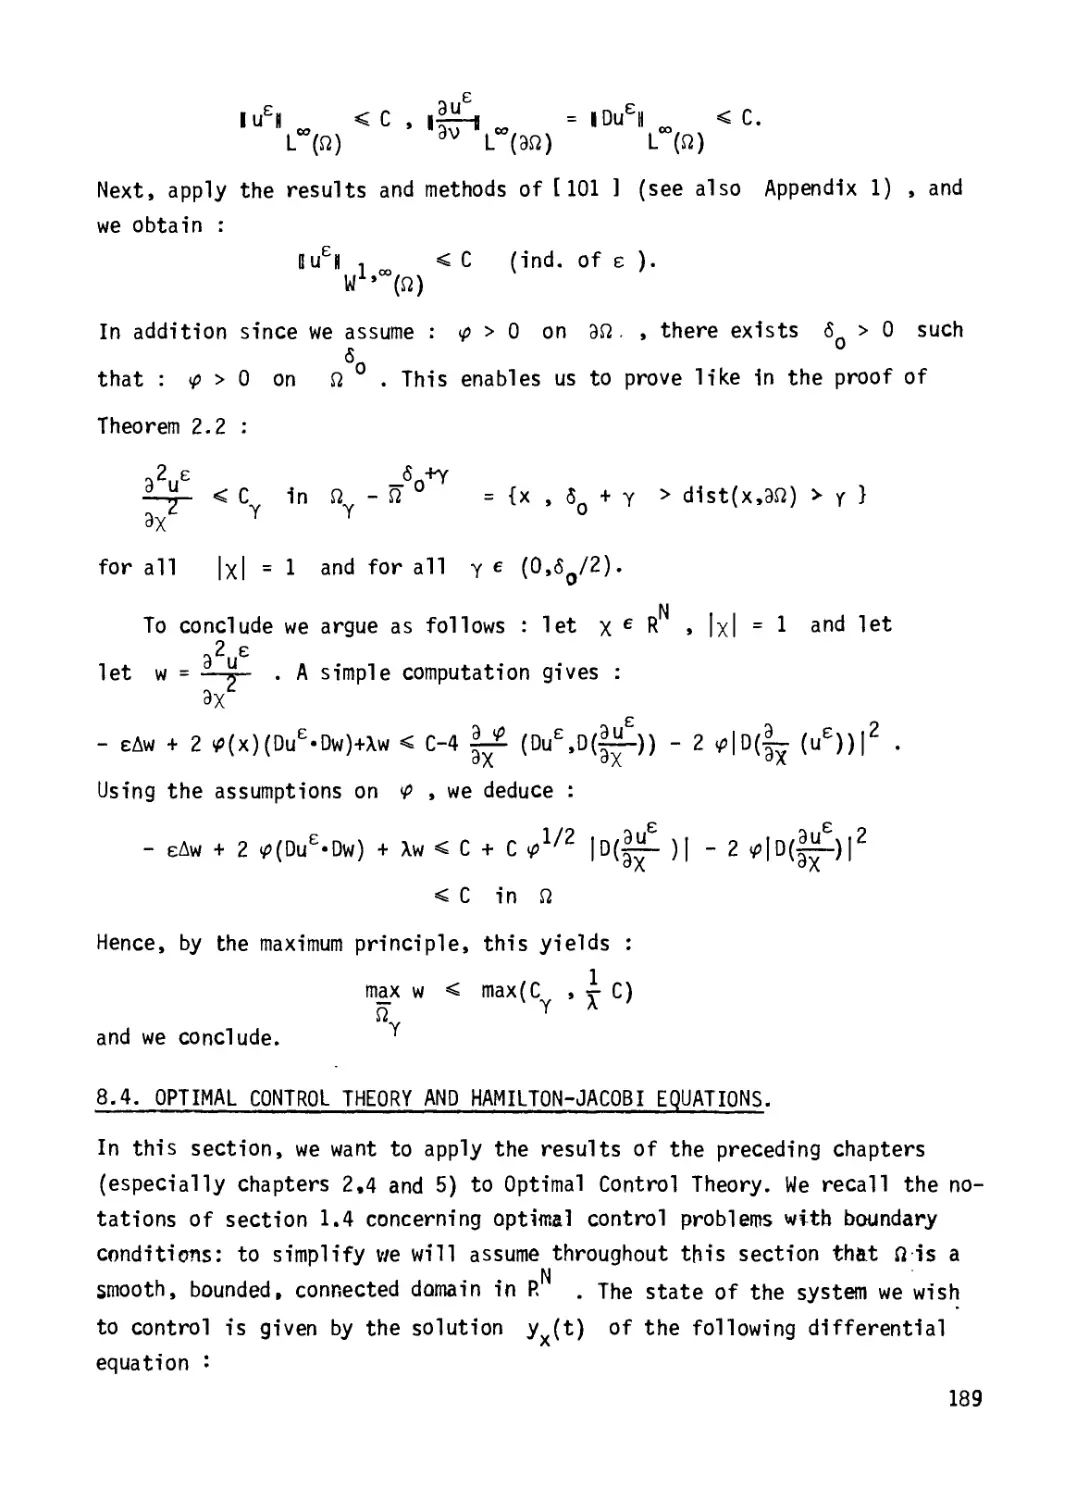 8.4 Optimal control theory and Hamilton-Jacobi equations